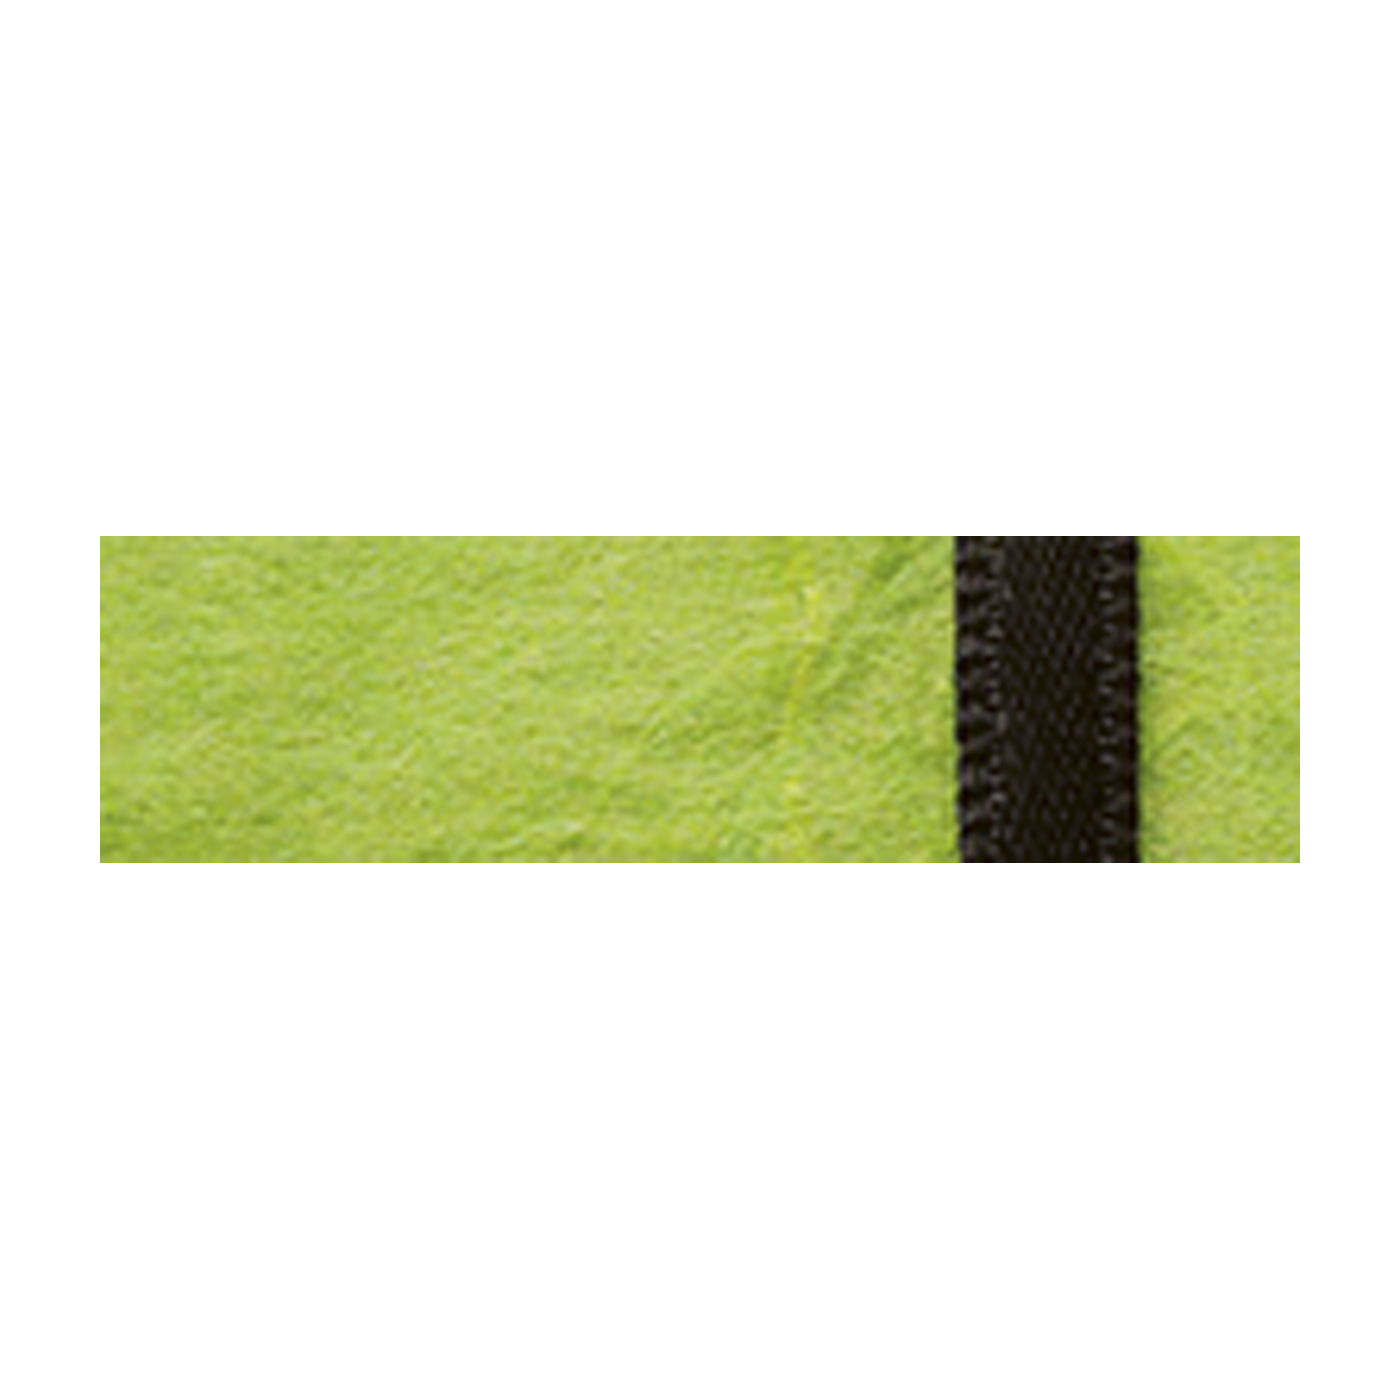 Papiertaschen, grün mit schwarzem Band, 80 x 80 mm - 10 Stück